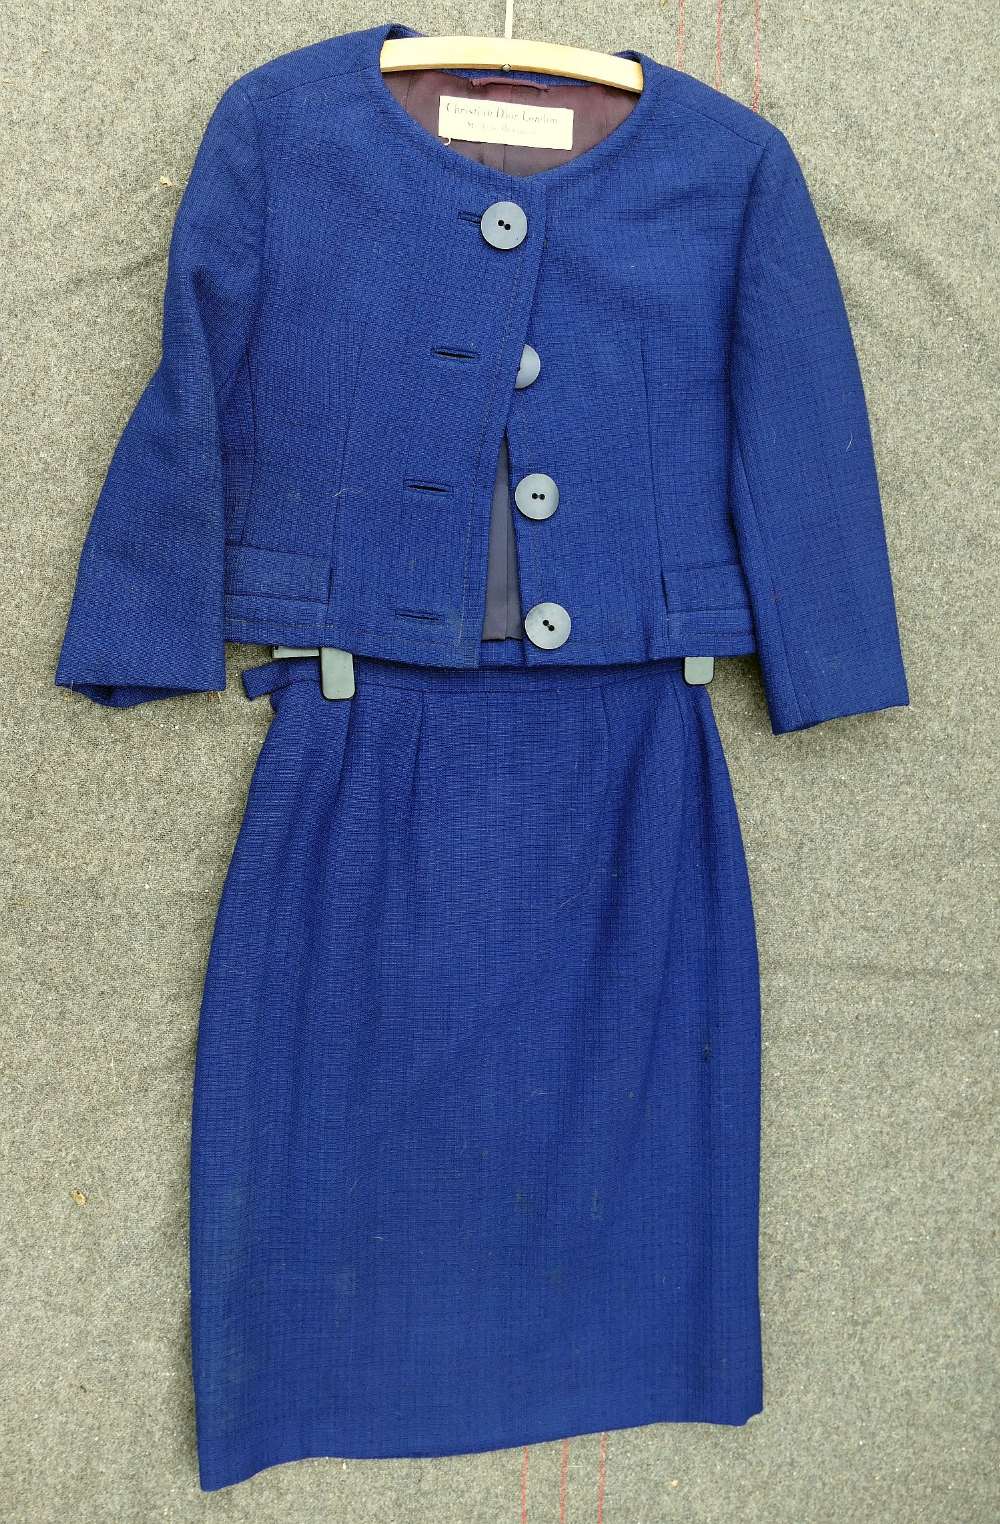 A vintage Christian Dior navy blue suitCONDITION REPORTS & PAYMENT DETAILSIMPORTANT * Descriptions